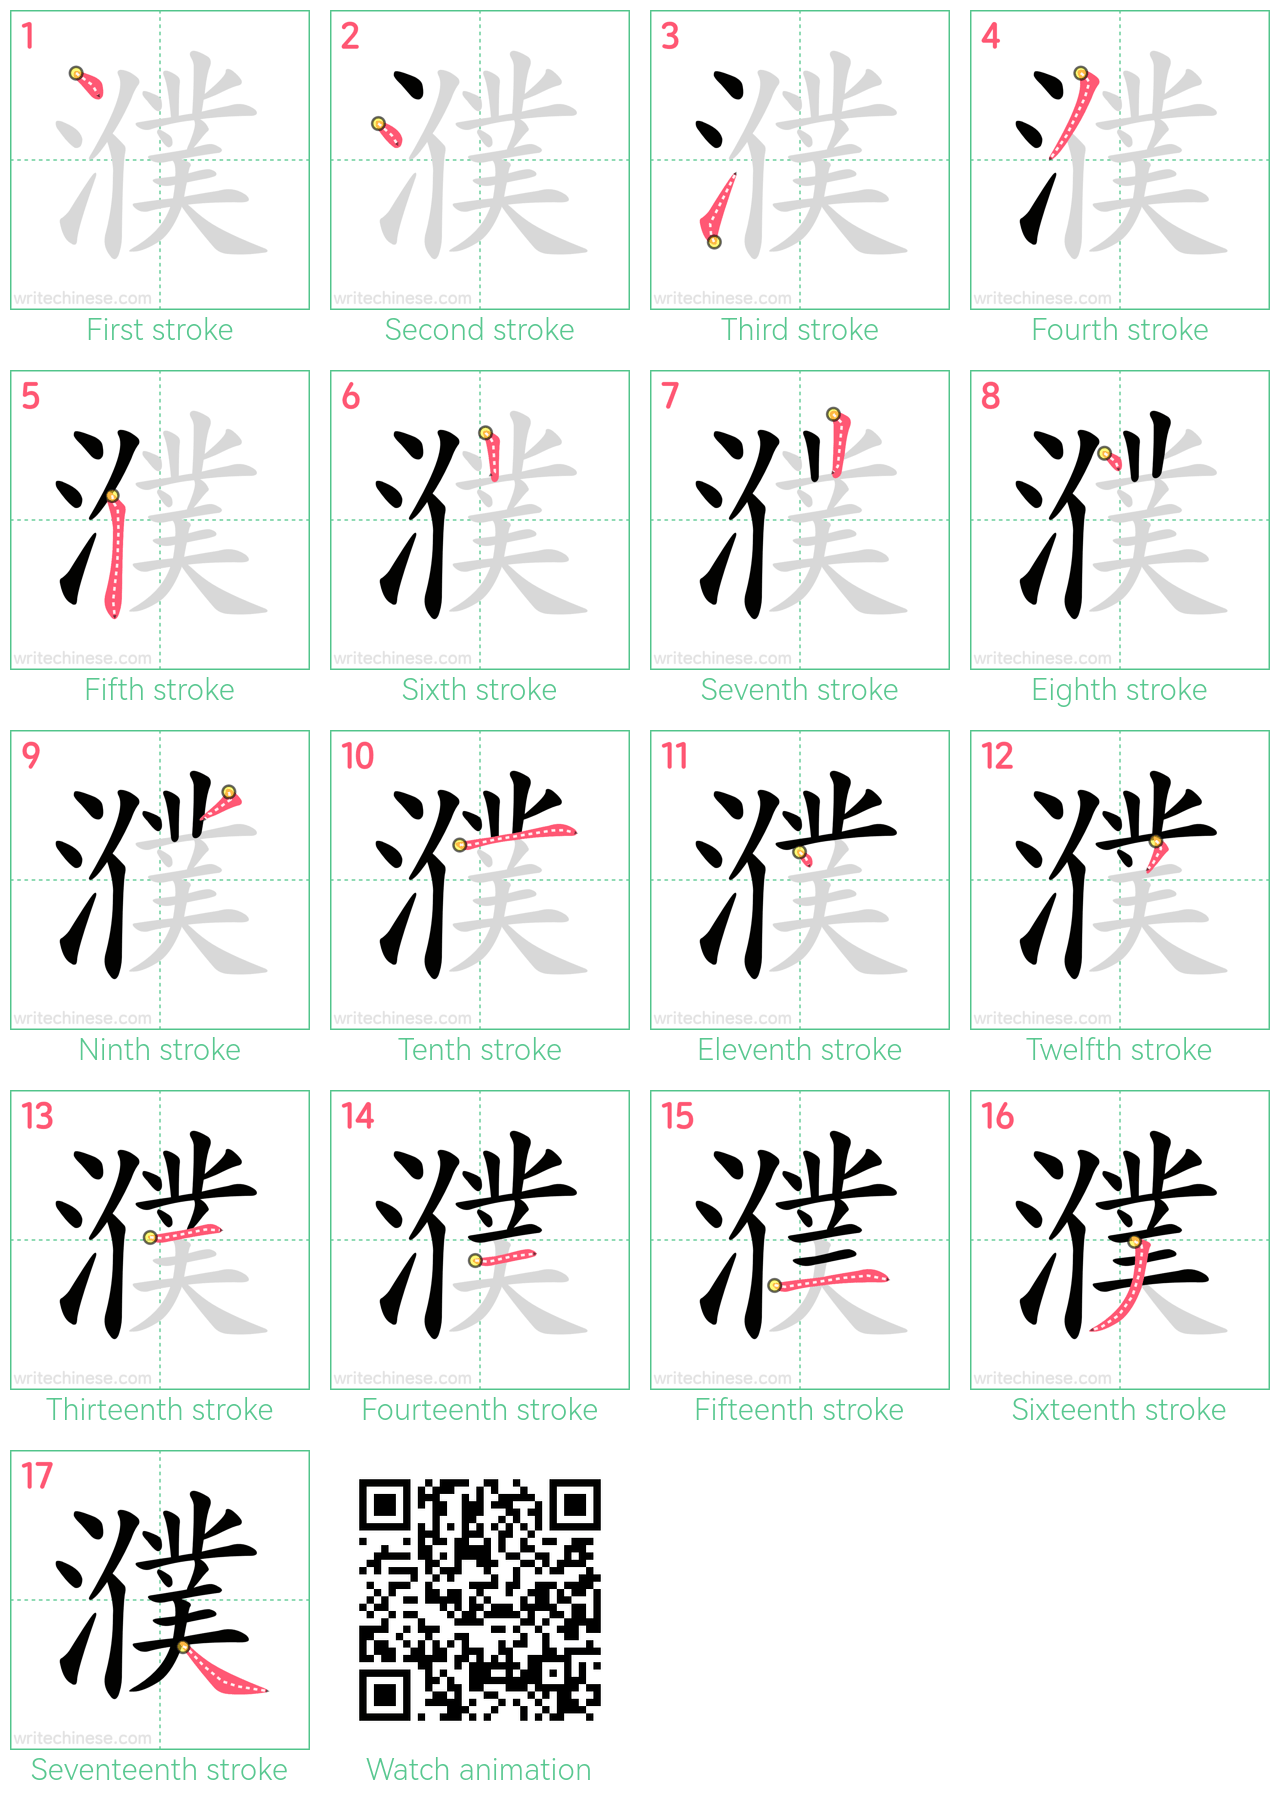 濮 step-by-step stroke order diagrams